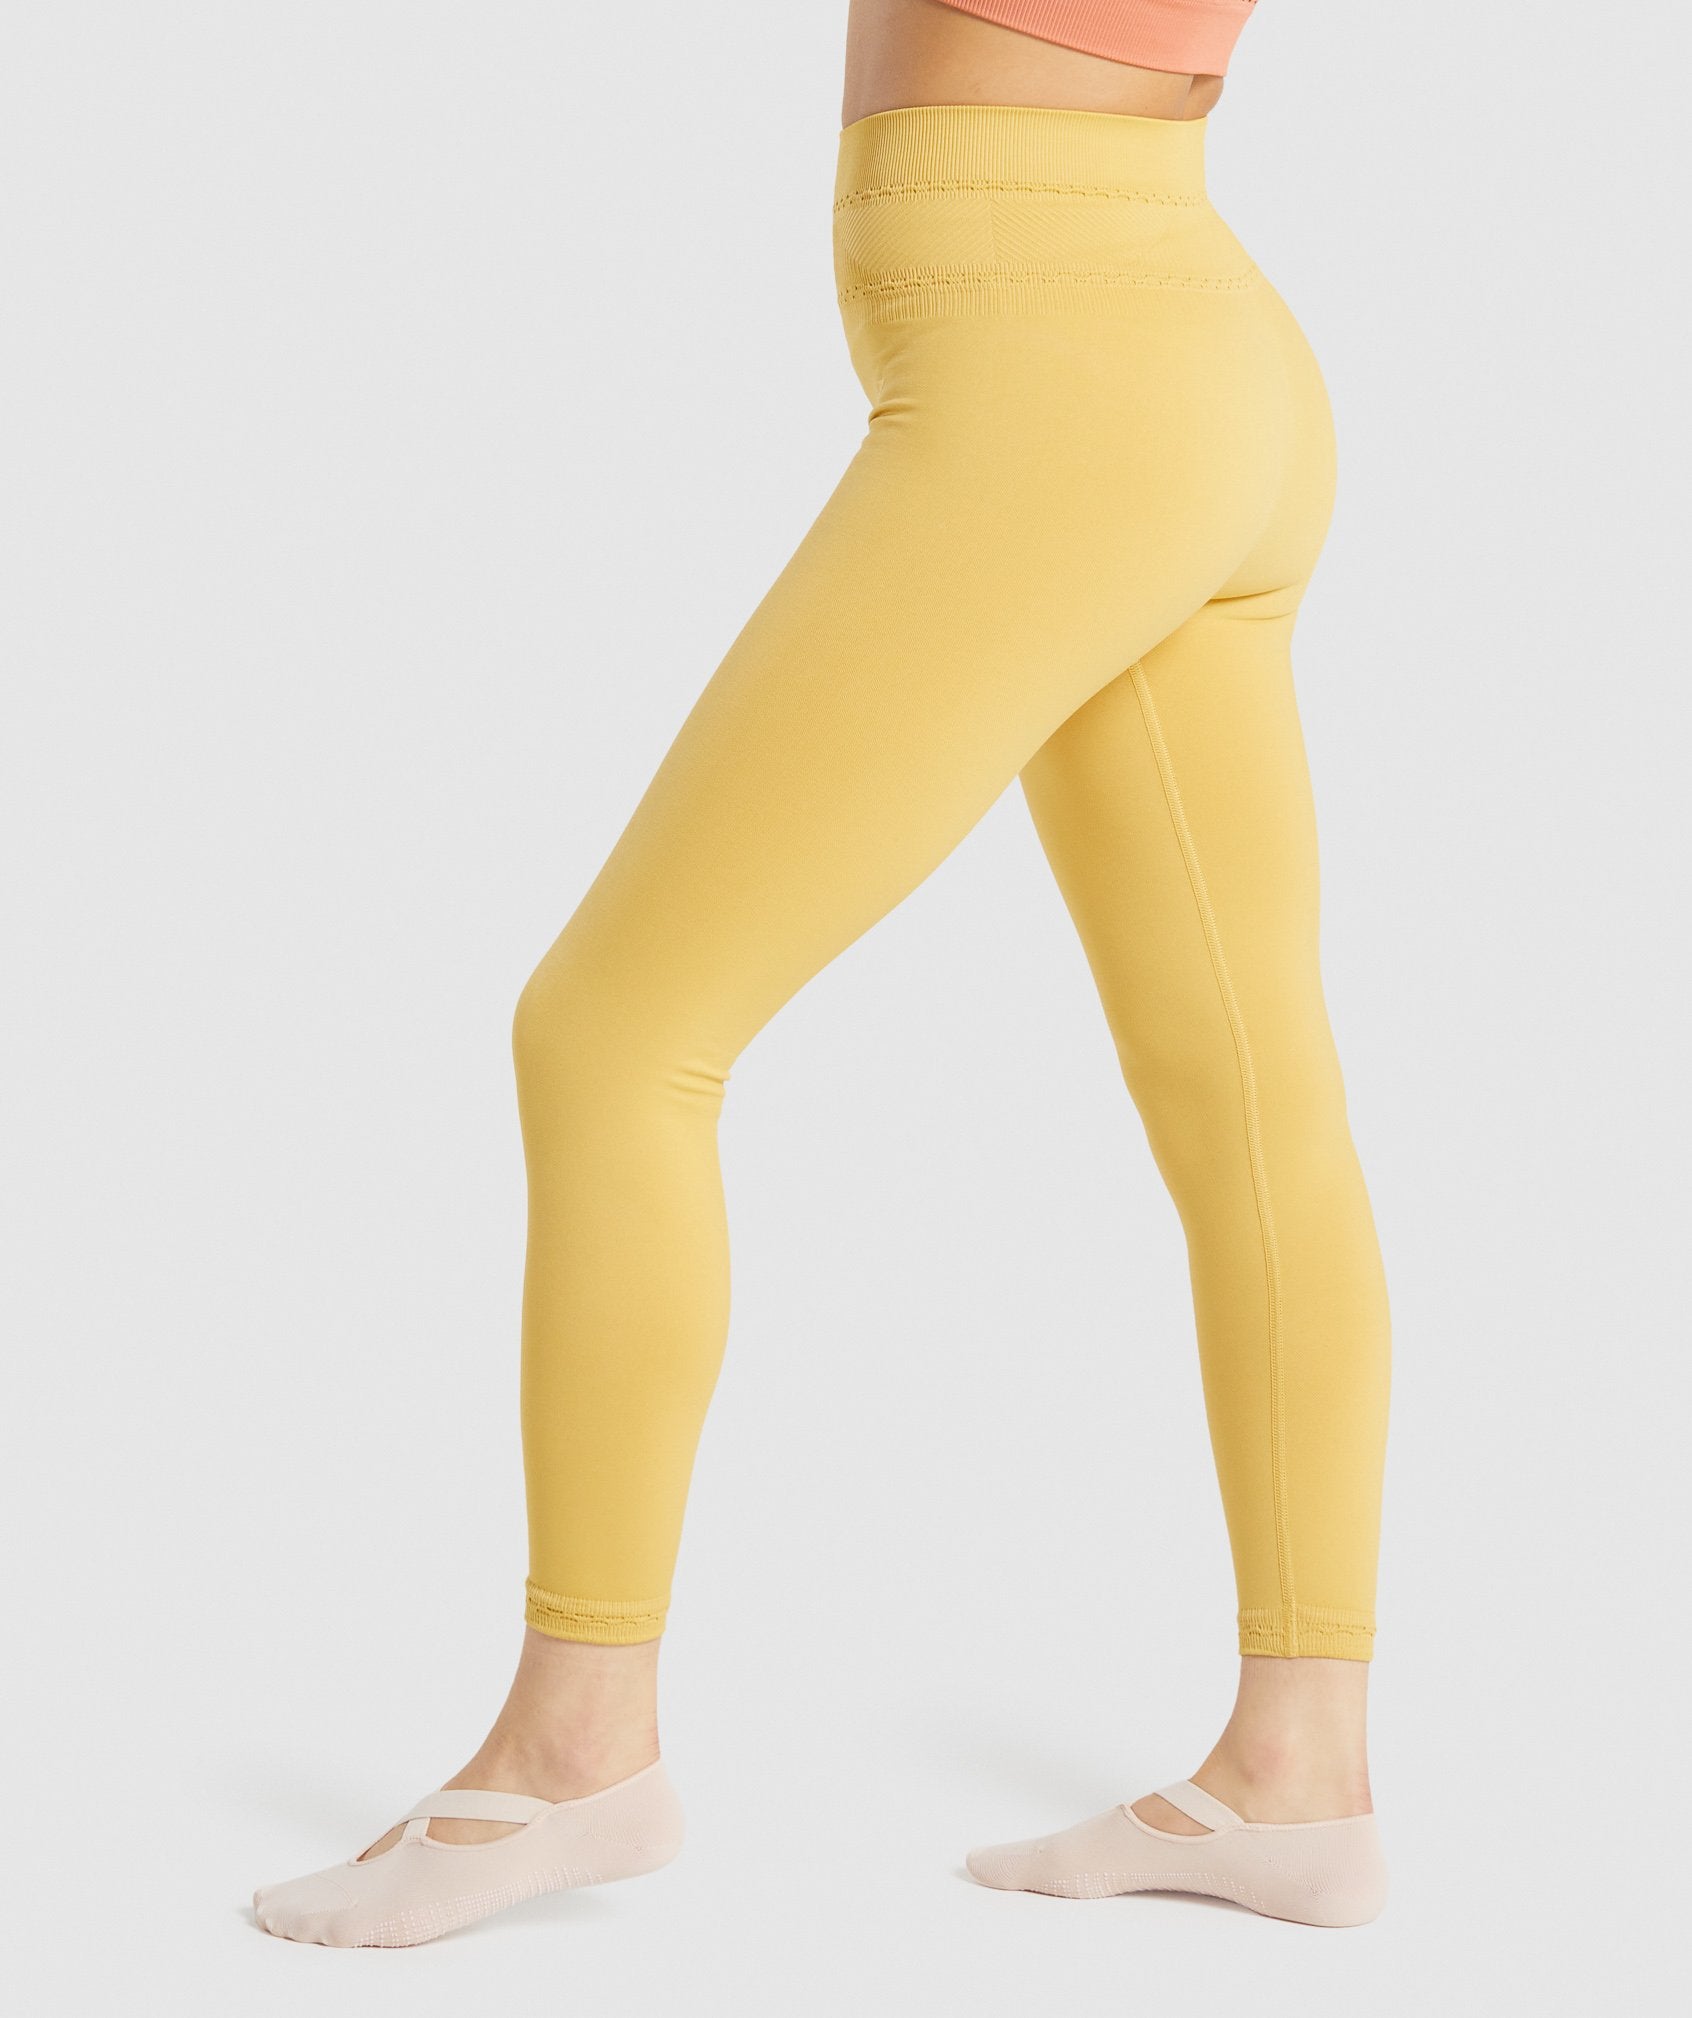 Gymshark Women's Training Leggings (Size S) Yellow Vital Rise Leggings - New